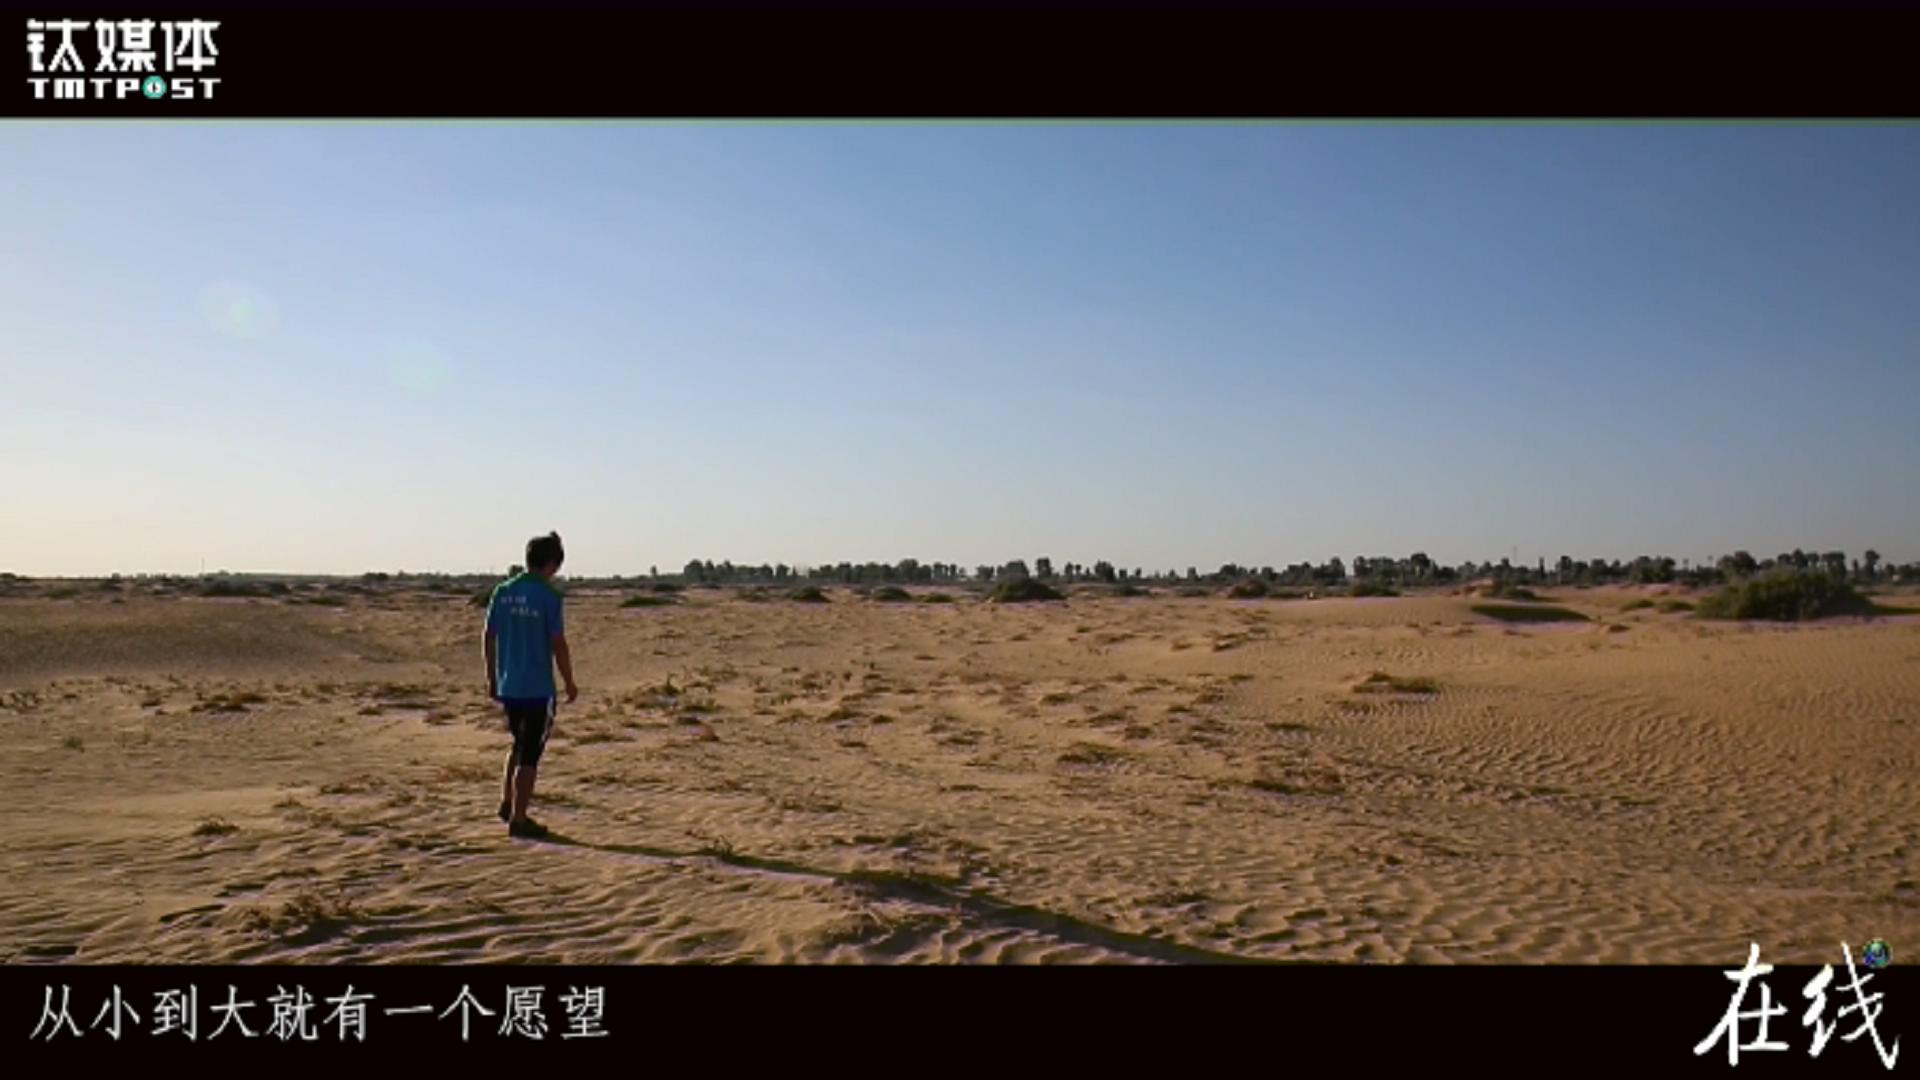 寒门学子和他背后的乡土中国丨钛媒体《在线》